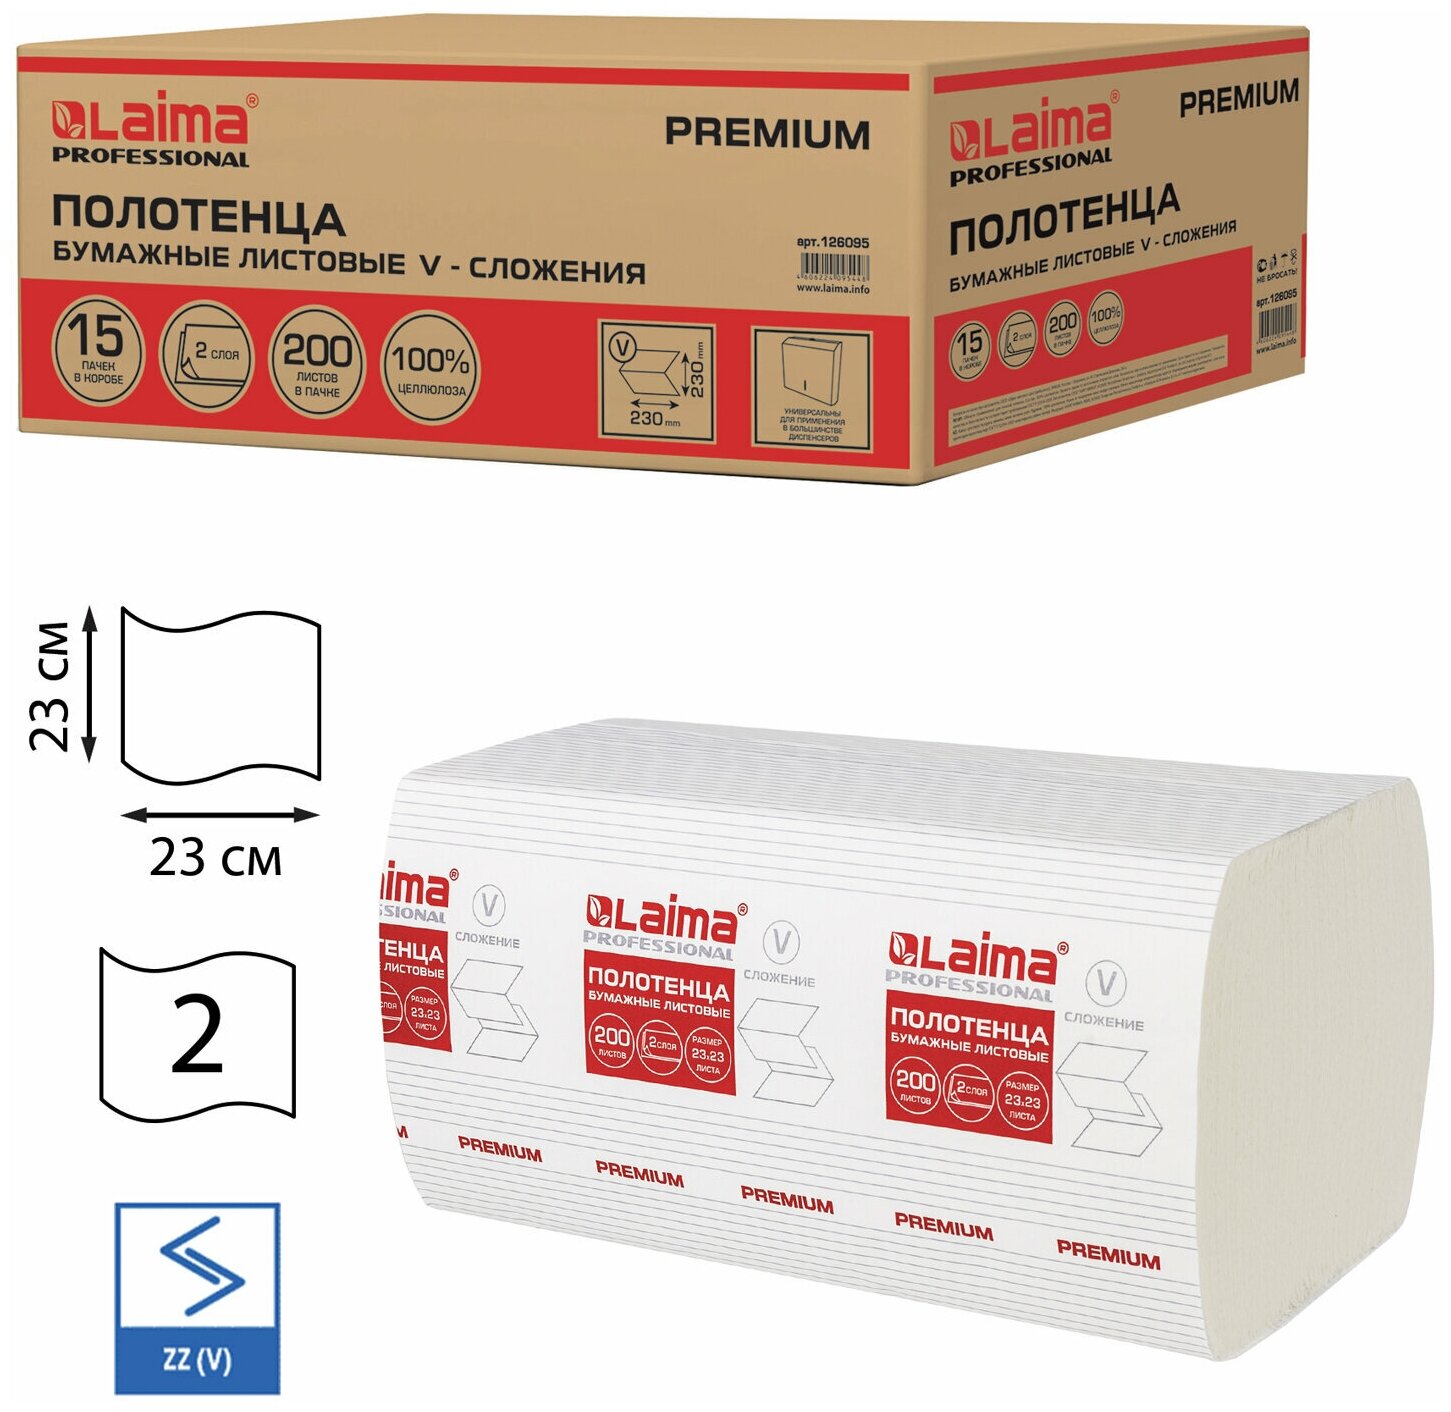 Полотенца бумажные 200 штук, (H3) PREMIUM, 2-слойные, белые, комплект 15 пачек, 23х23, V-сложение